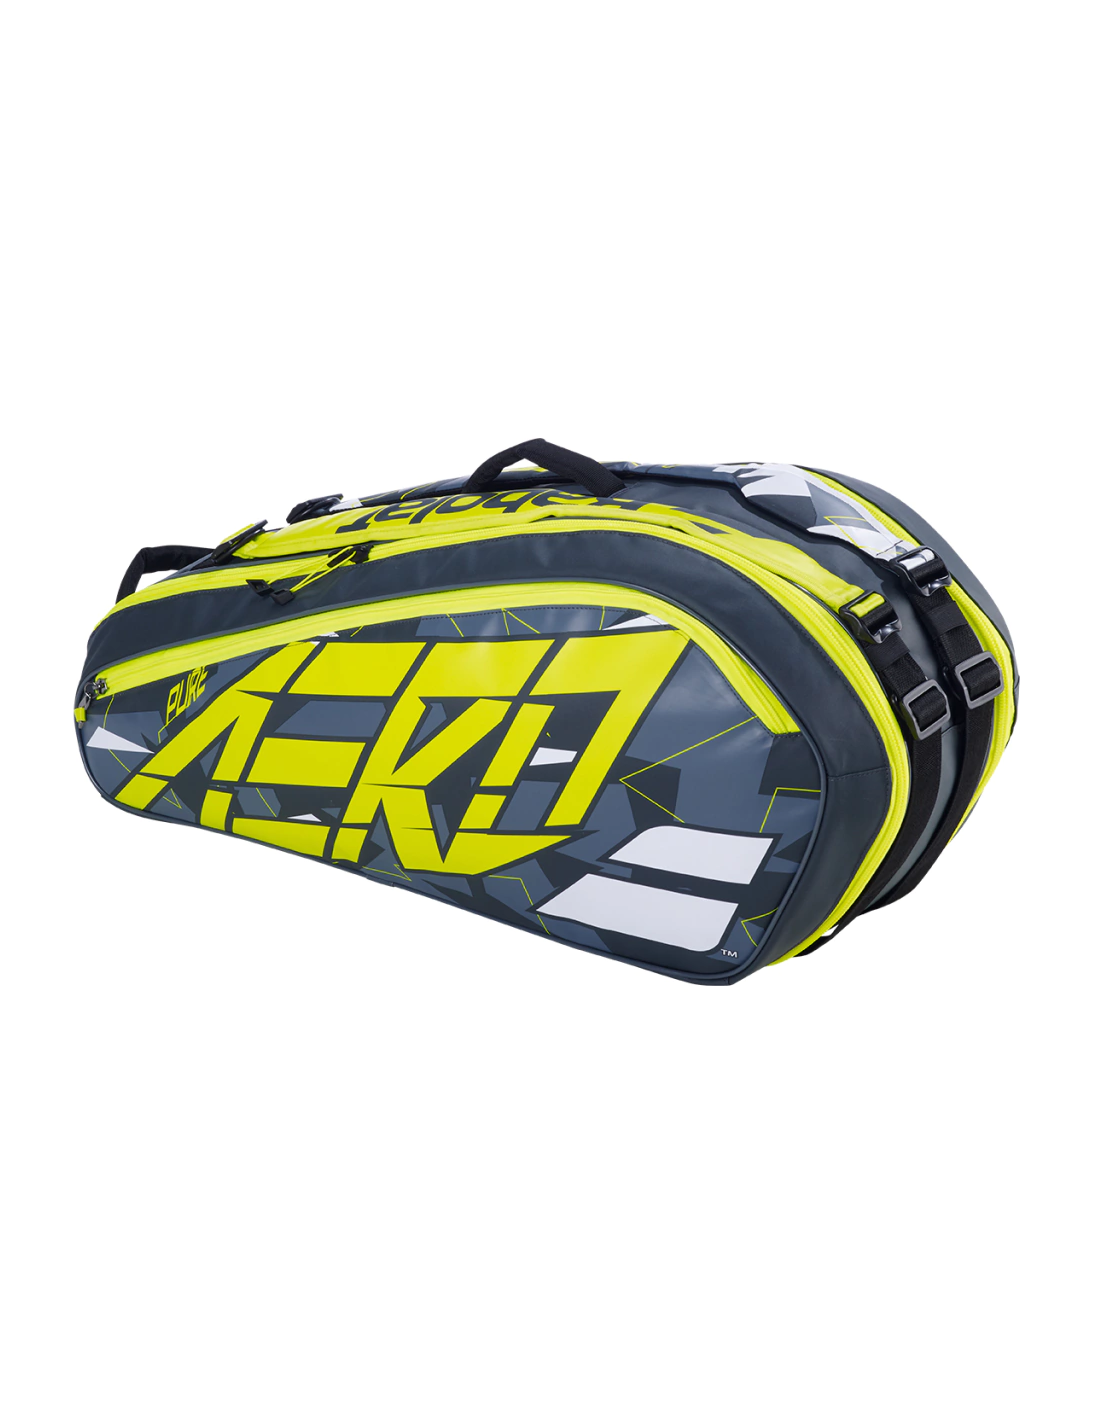 Bolso Raquetero Head Tour Team X12 En My Tennis Gear